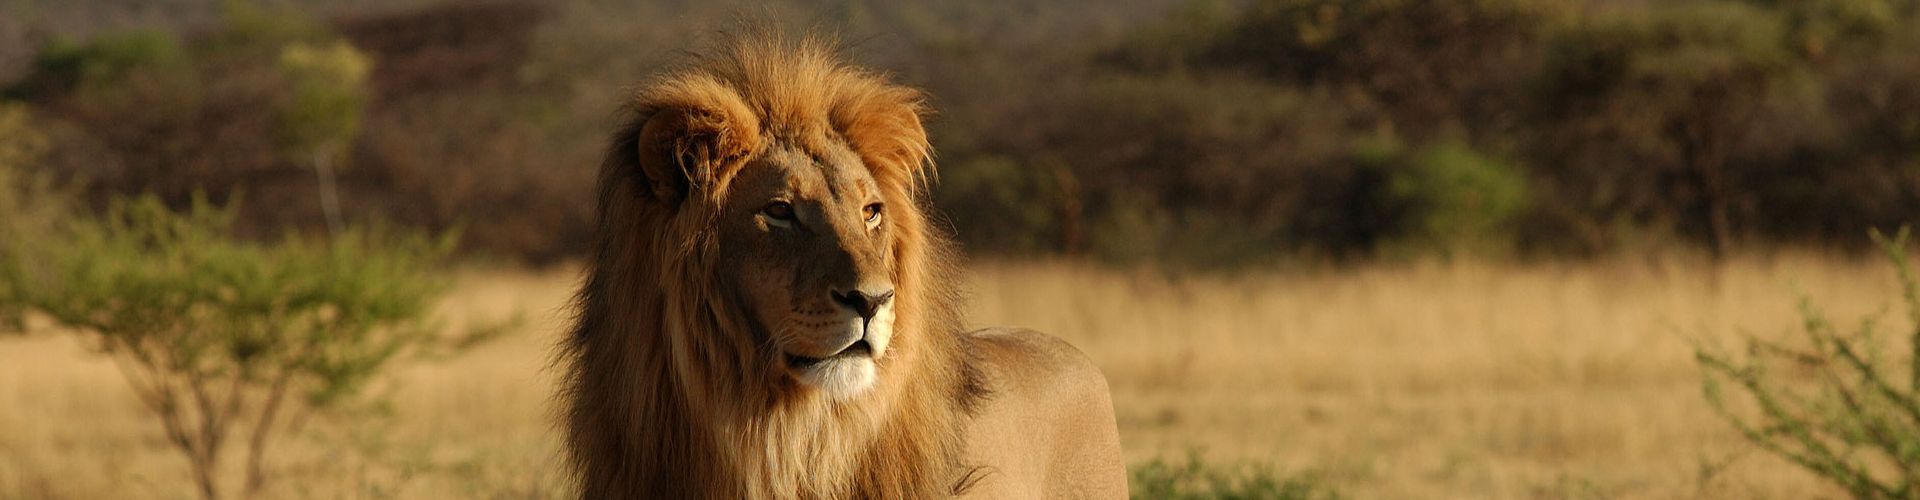 Provate la qualità delle vacanze Safari Tanzania con Shemeji Safari!